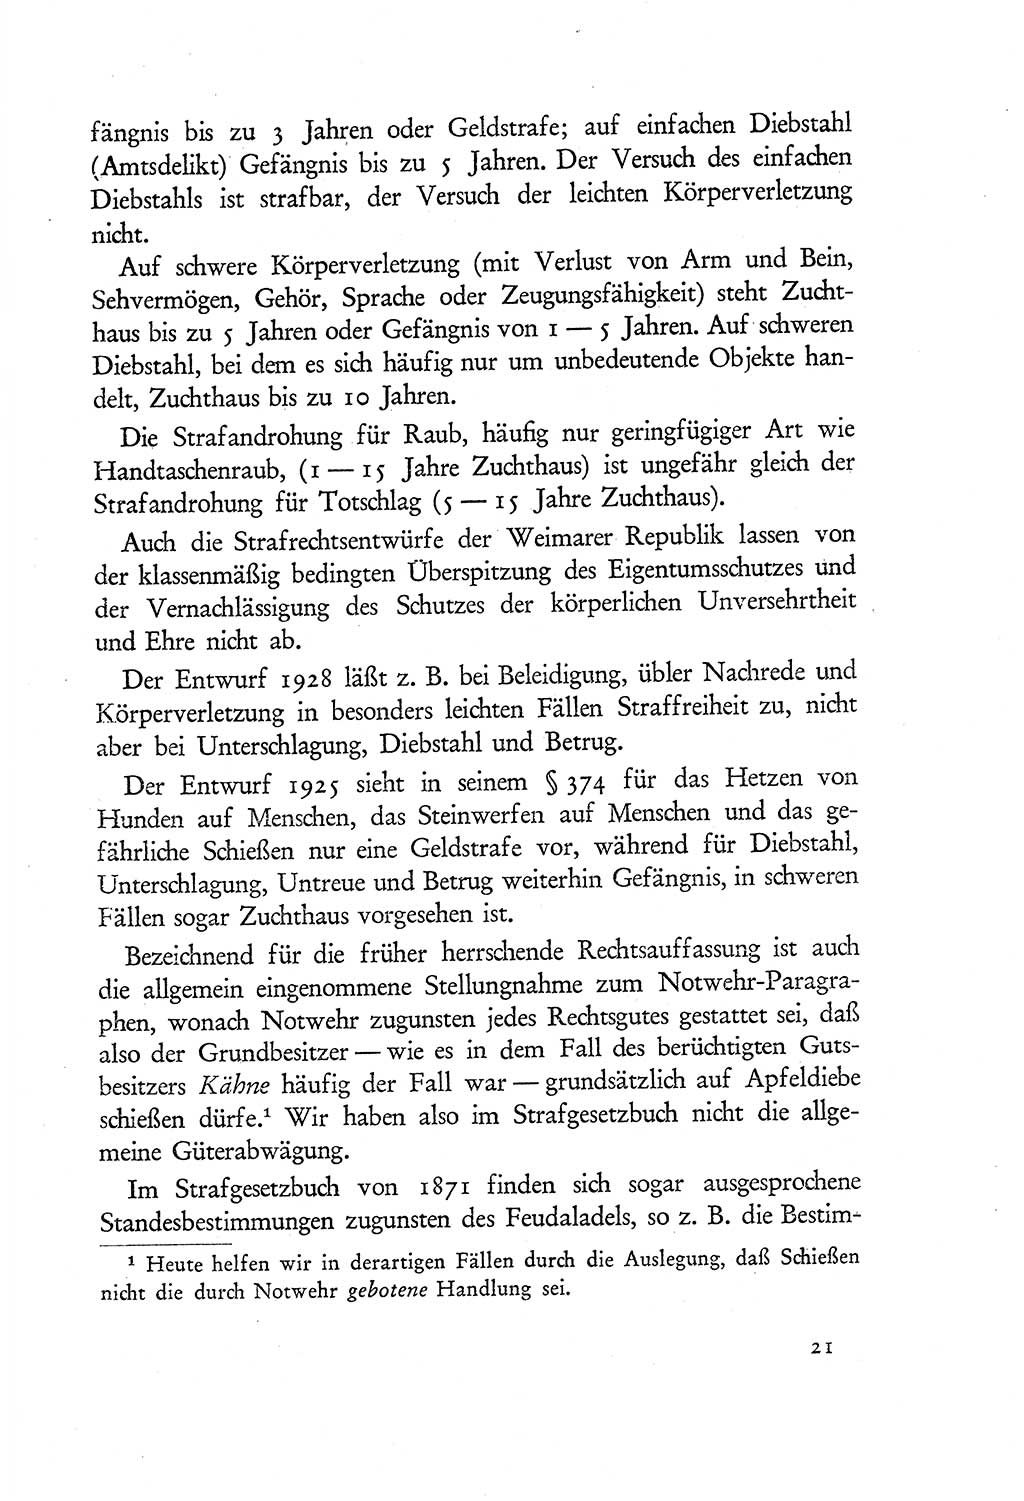 Probleme eines demokratischen Strafrechts [Sowjetische Besatzungszone (SBZ) Deutschlands] 1949, Seite 21 (Probl. Strafr. SBZ Dtl. 1949, S. 21)